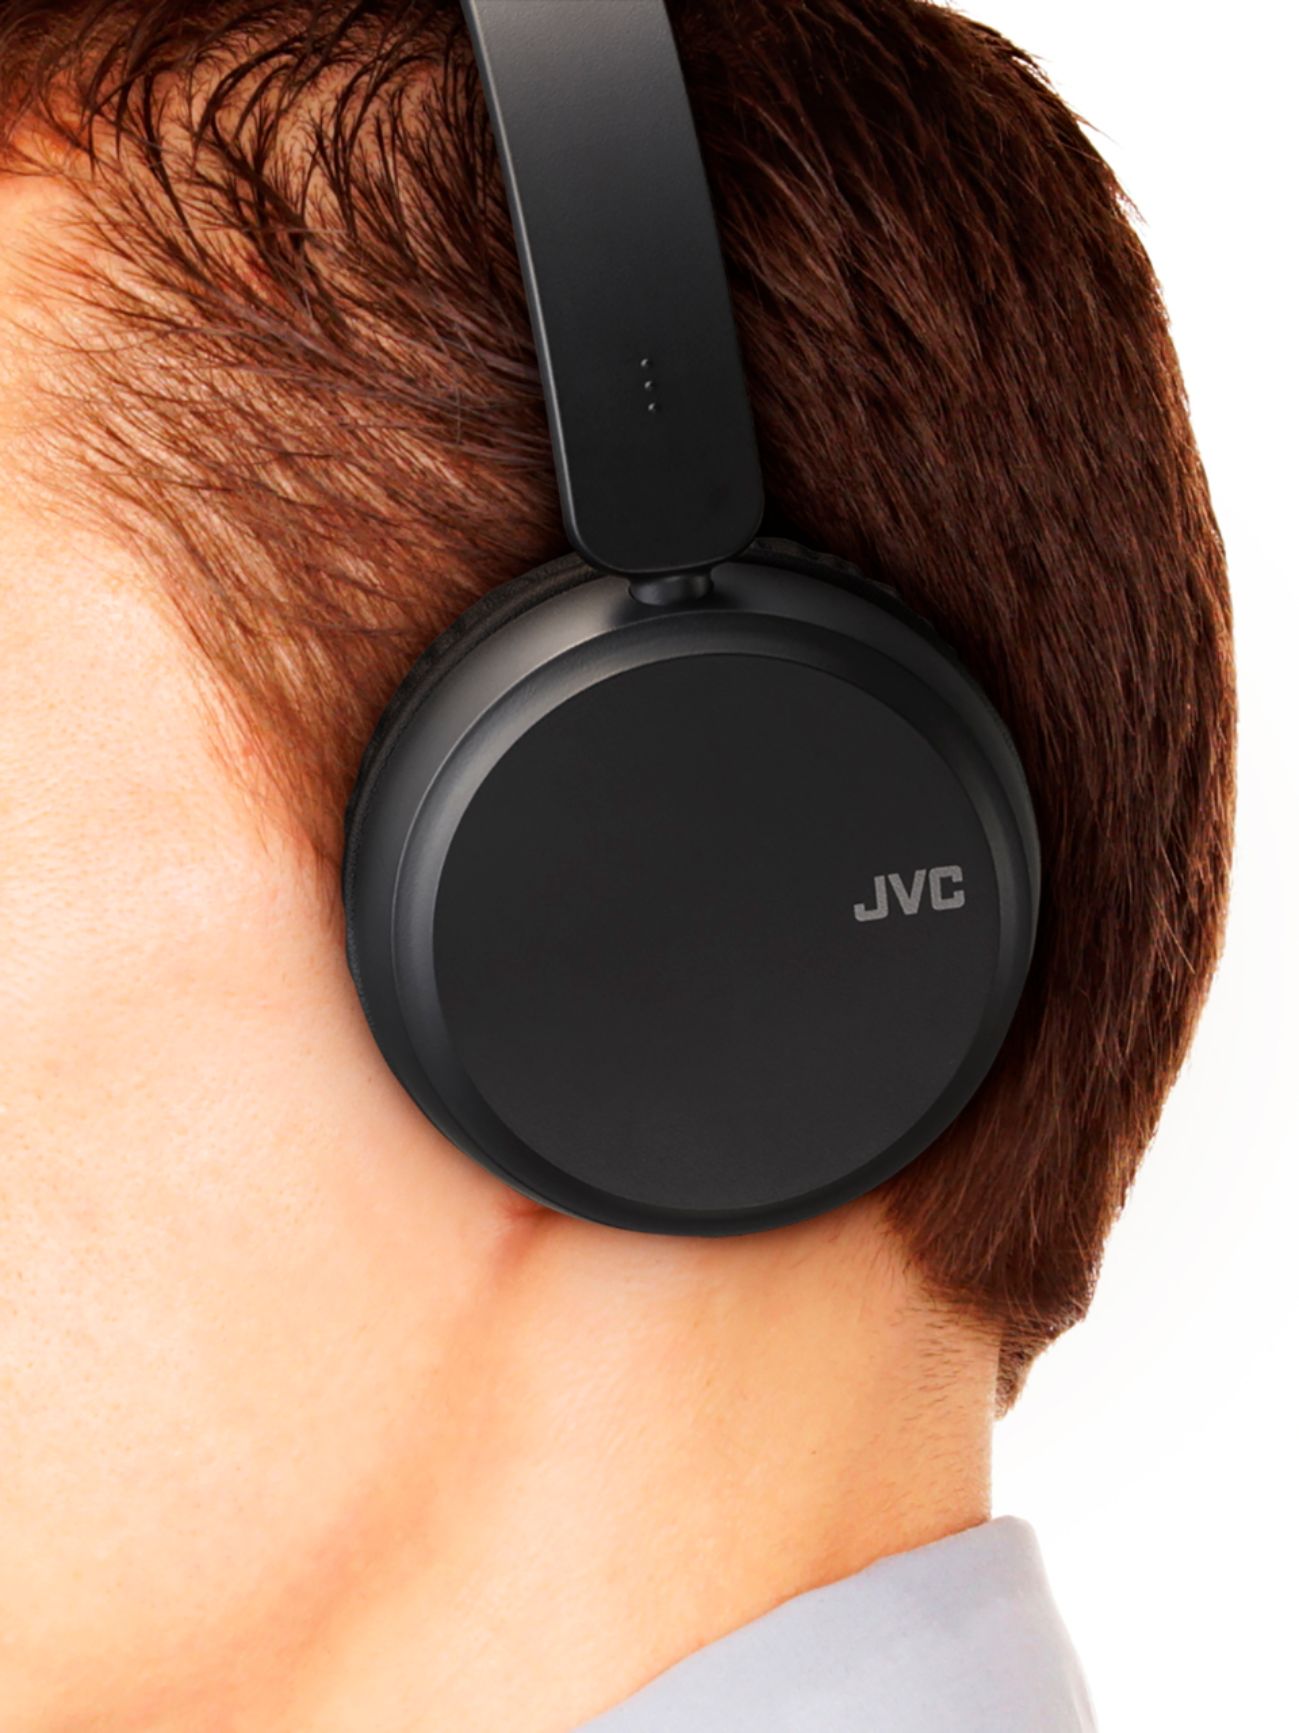 JVC Deep Bass Wireless Headphones HAS35BTB - Black - New, Factory